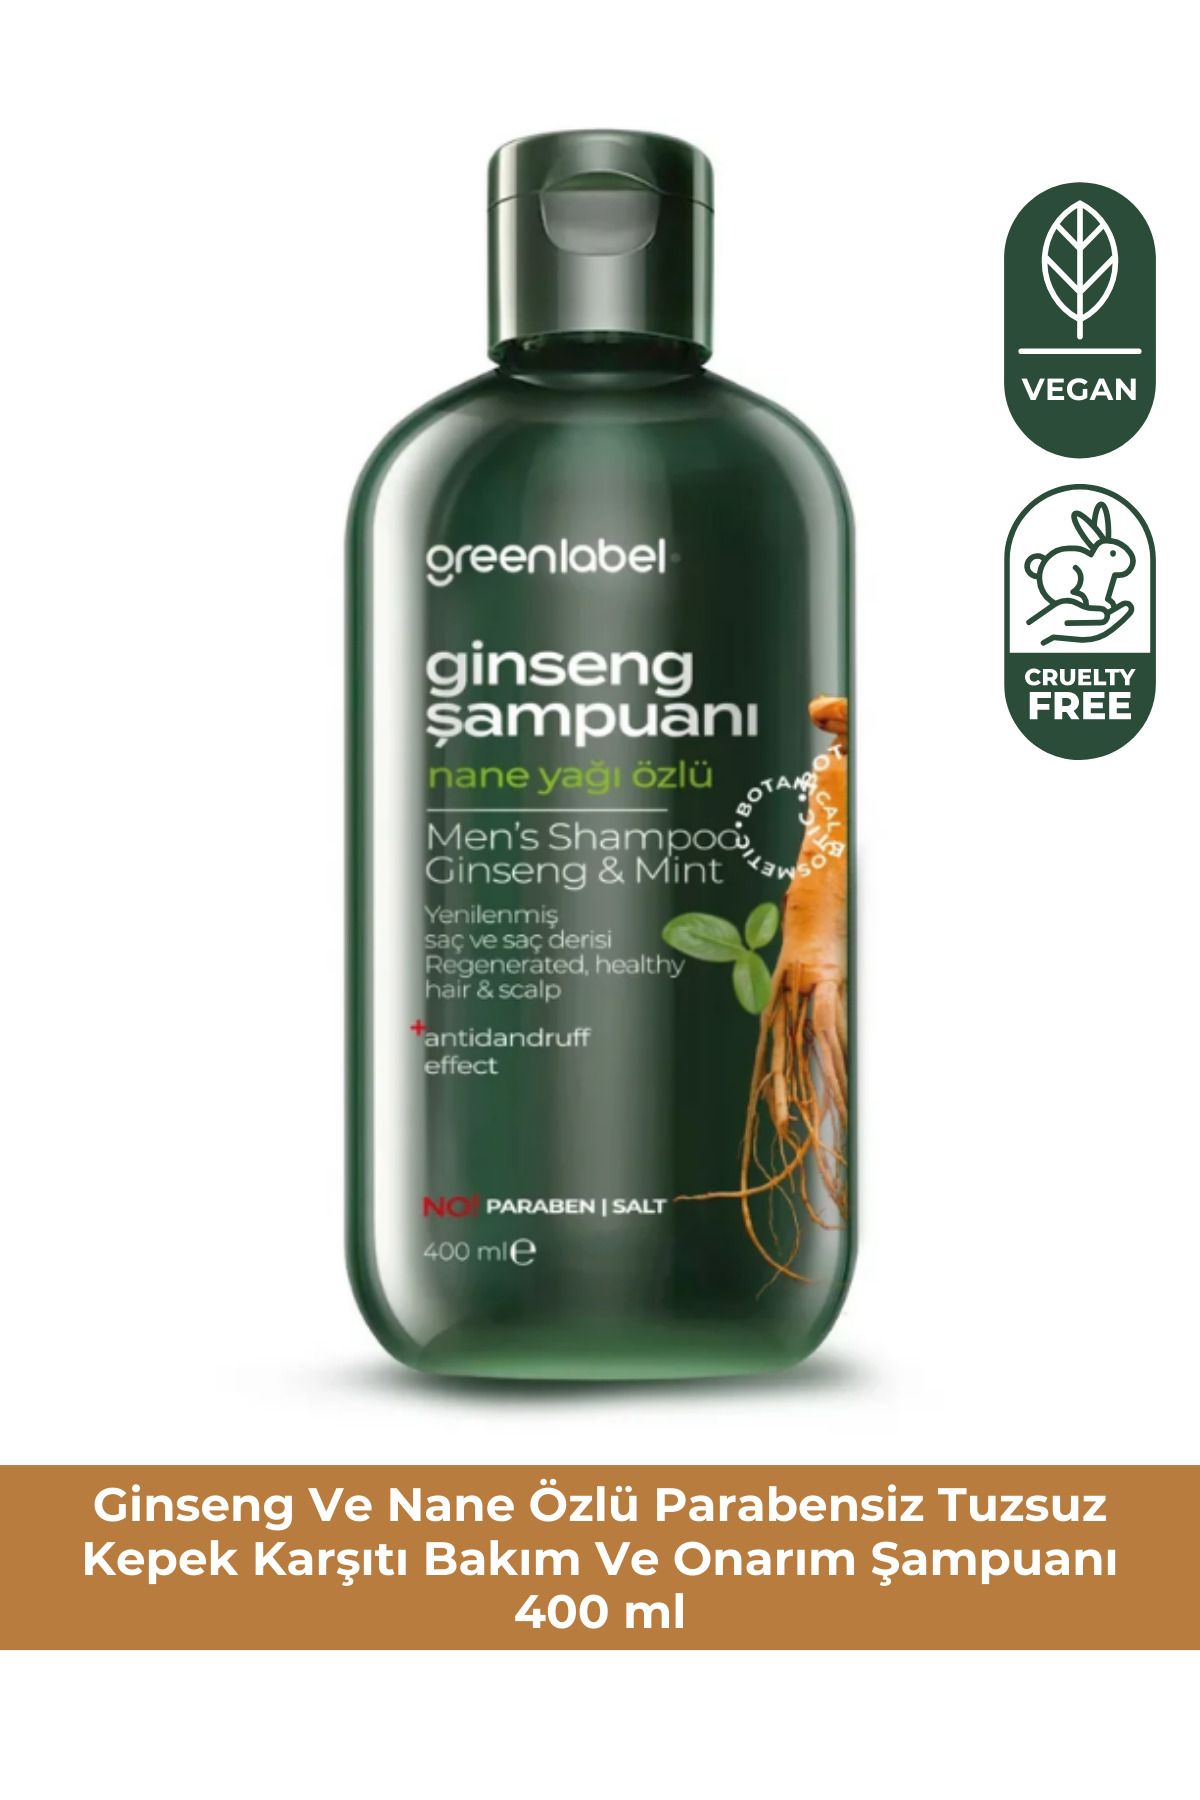 Green Label Greenlabel Ginseng Ve Nane Özlü Parabensiz Tuzsuz Kepek Karşıtı Bakım Ve Onarım Şampuanı 400ml